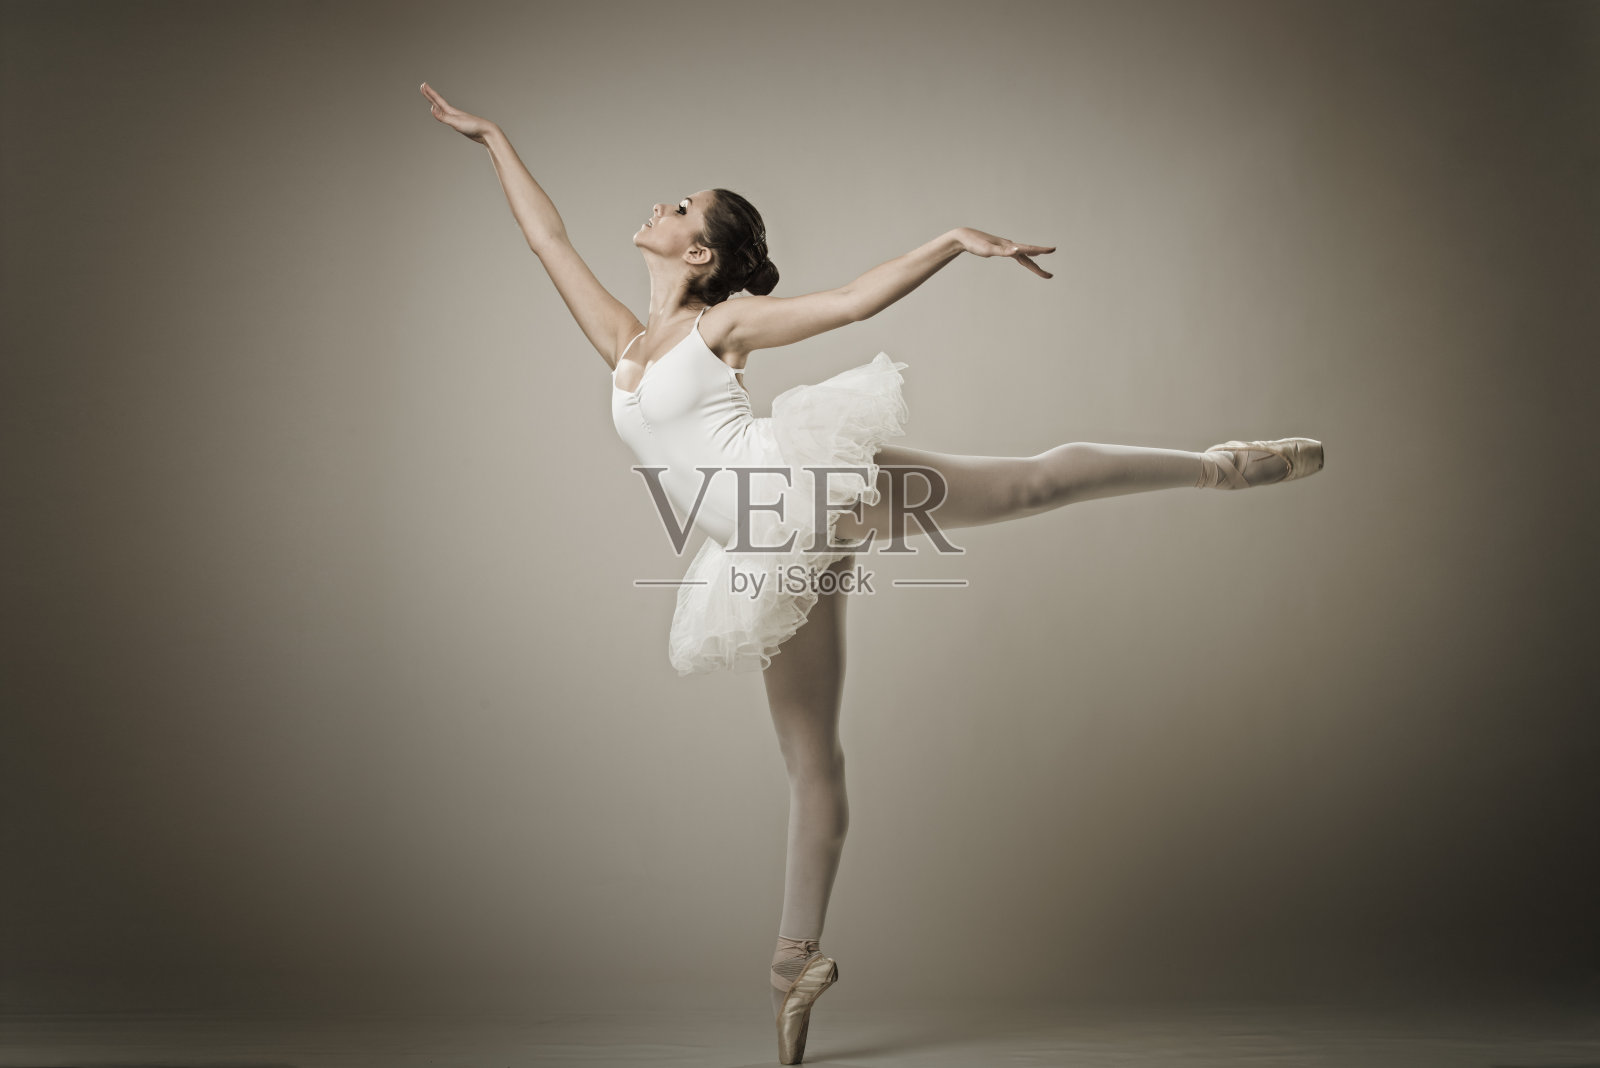 芭蕾舞演员摆芭蕾舞姿势的肖像照片摄影图片